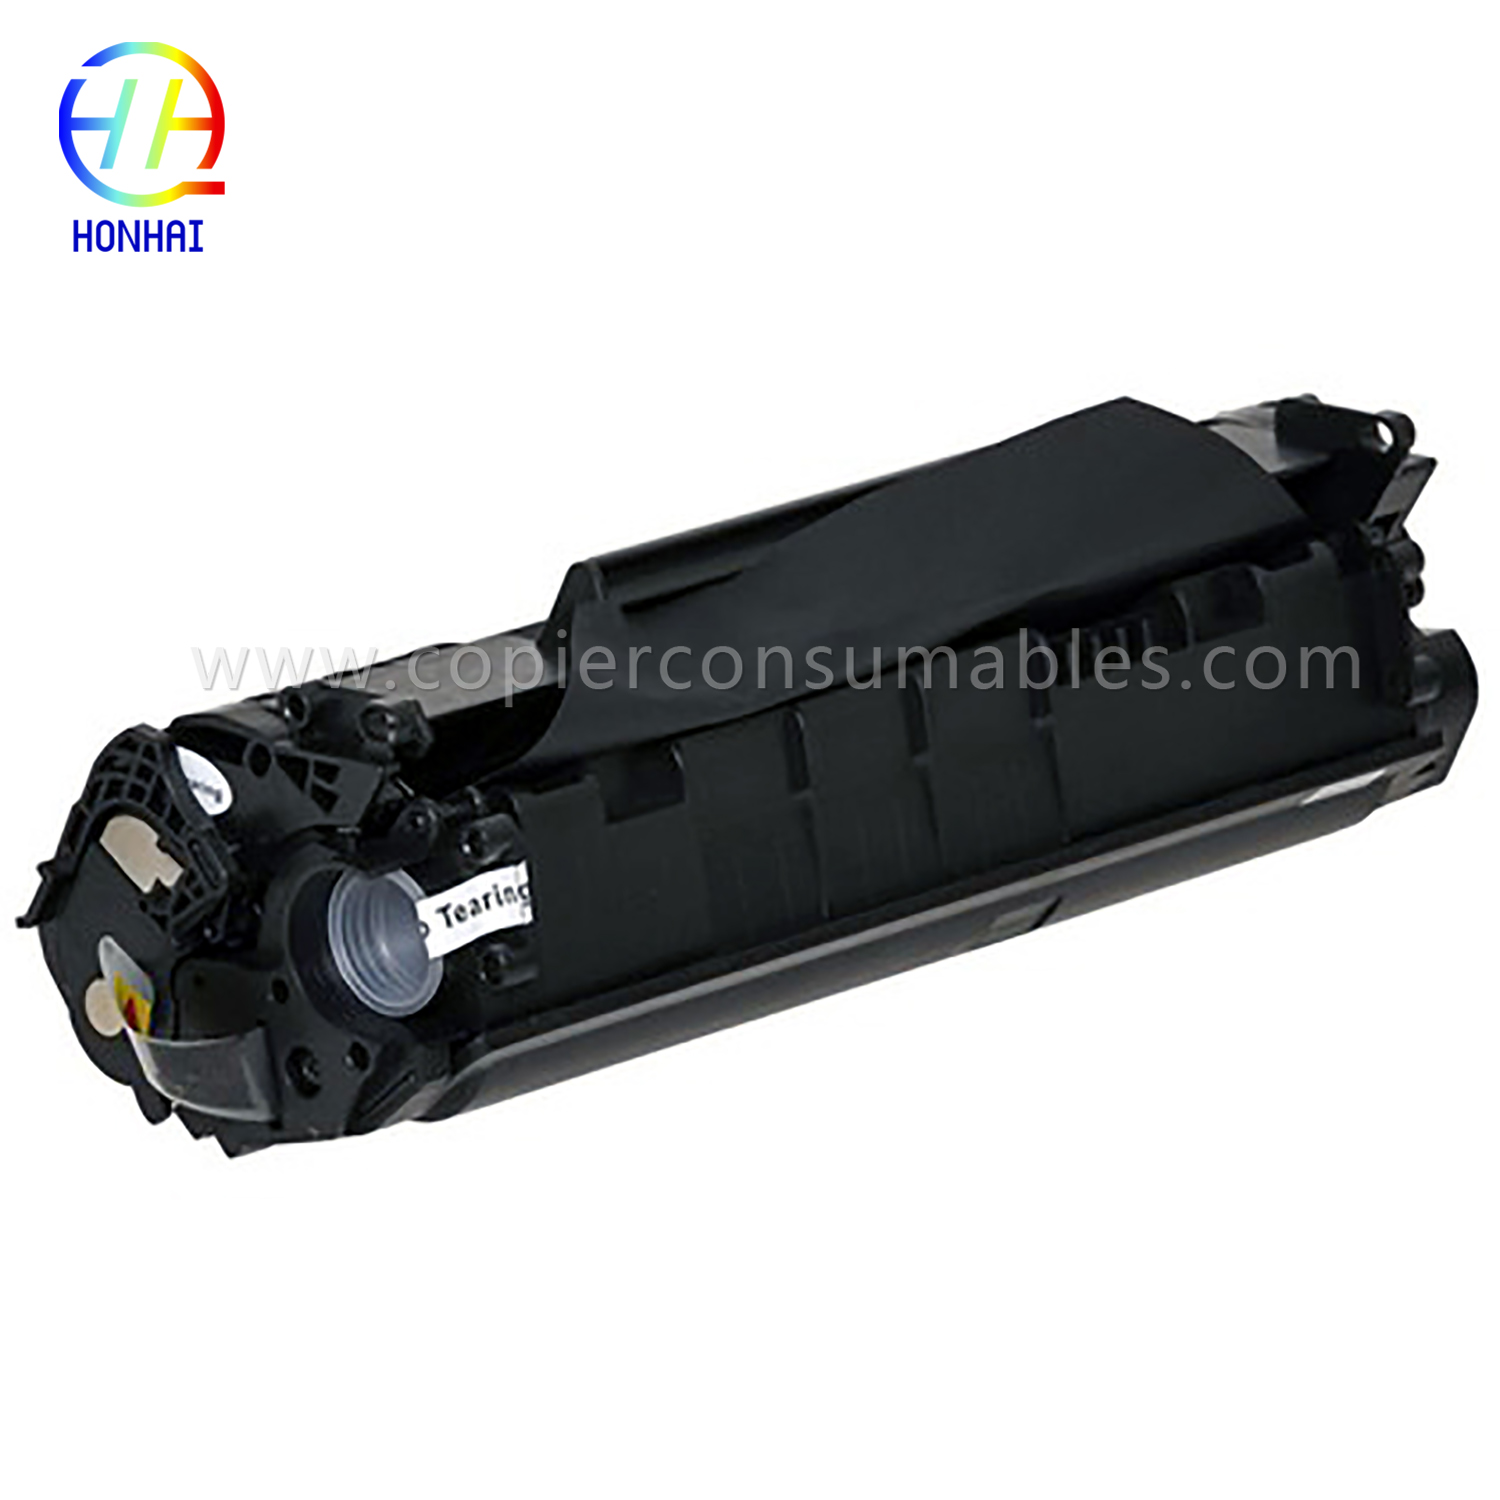 Black Toner Cartridge HP LaserJet 1010 1012 1015 1018 1020 3015 3020 3030 3050 3052 3055 M1005MFP M1319f (Q2612A) 13612A) 13612A -13.9x4 -2贋贋5.